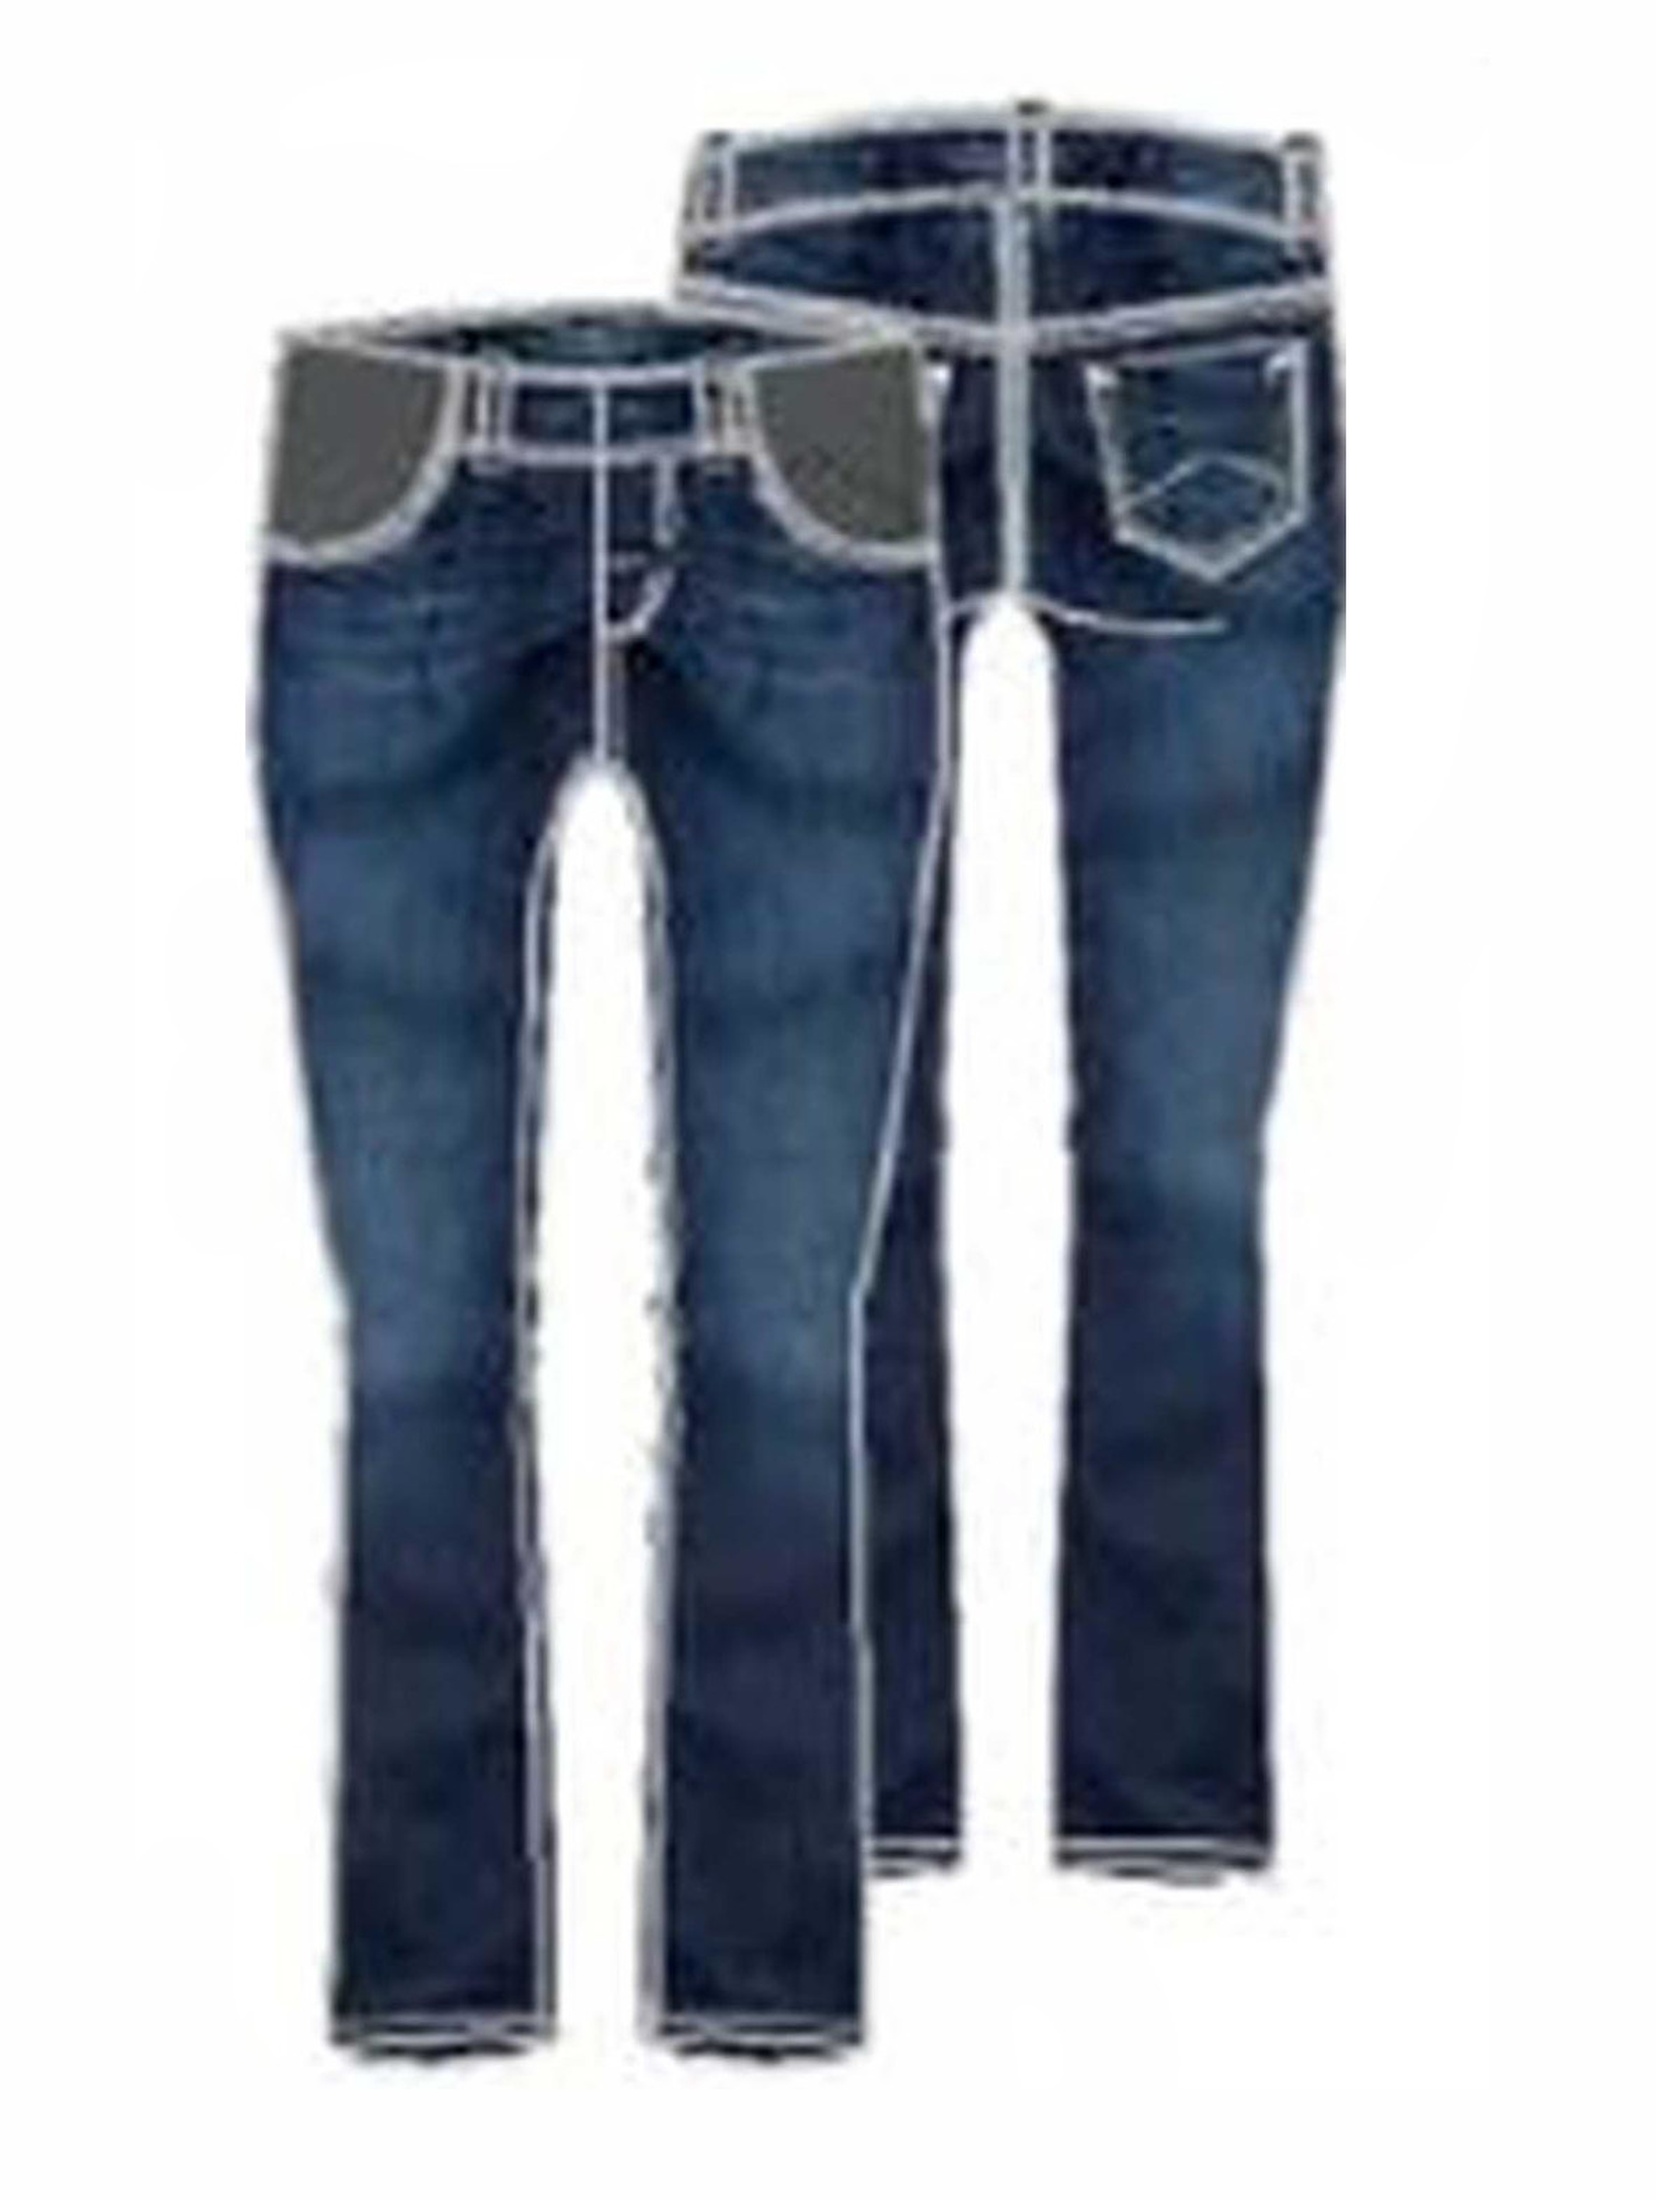 Spodnie jeansowe damskie, ciążowe, bootcut, ciemnoniebieskie, Bellybutton